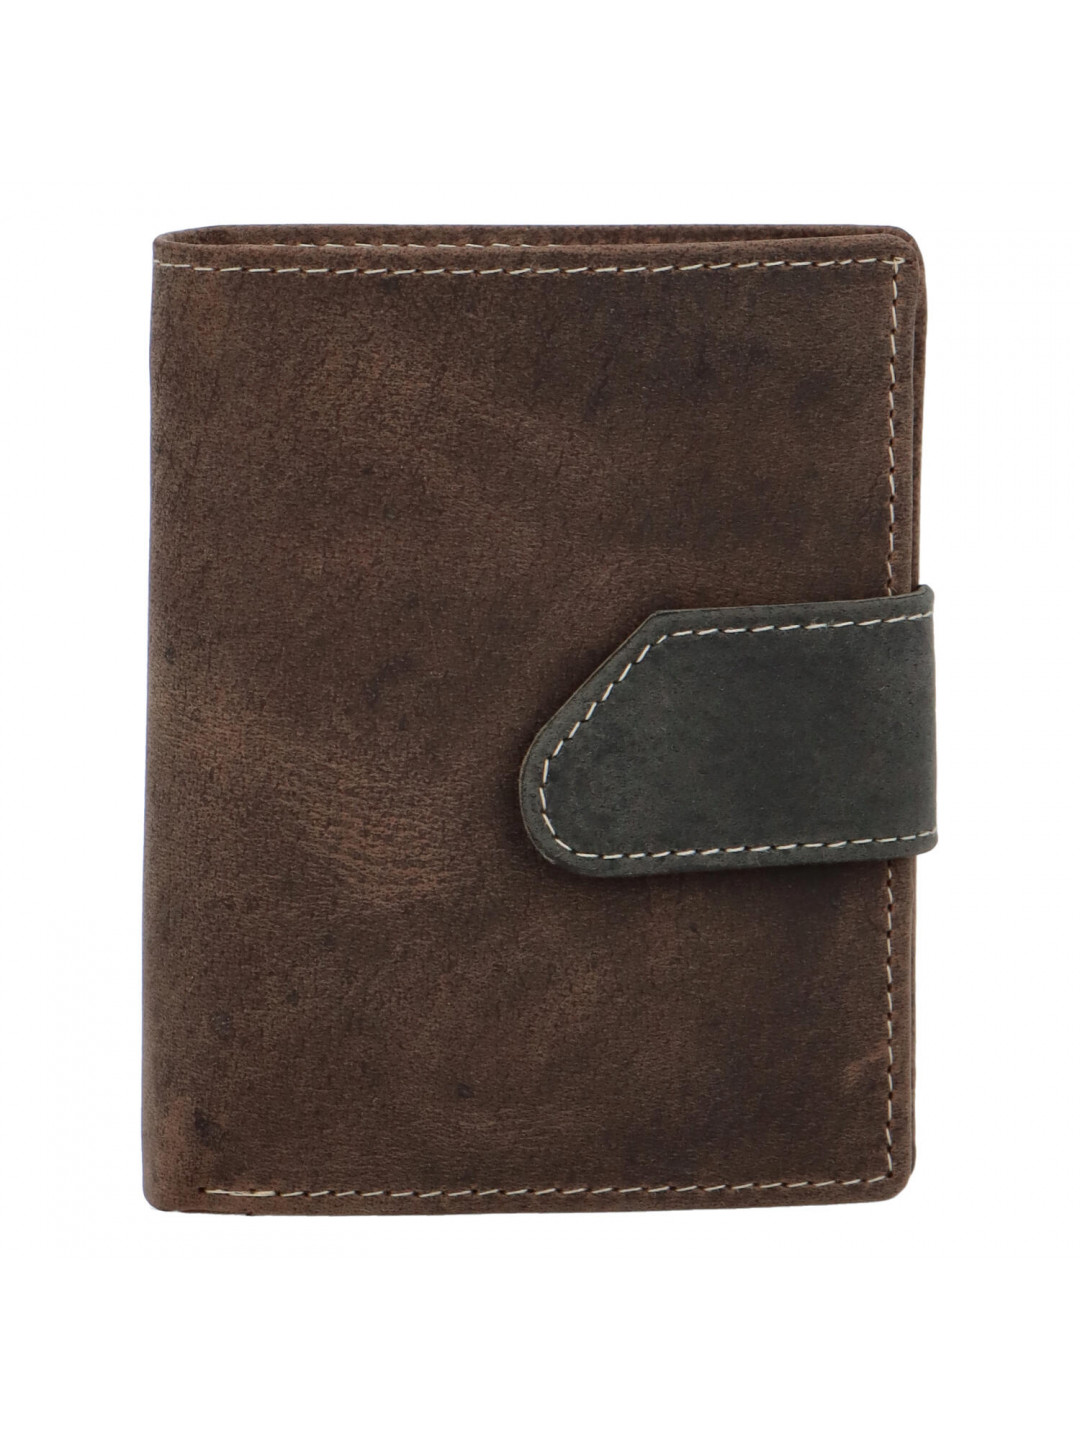 Pánská broušená kožená peněženka tmavě hnědá – Tomas 75VO Detail